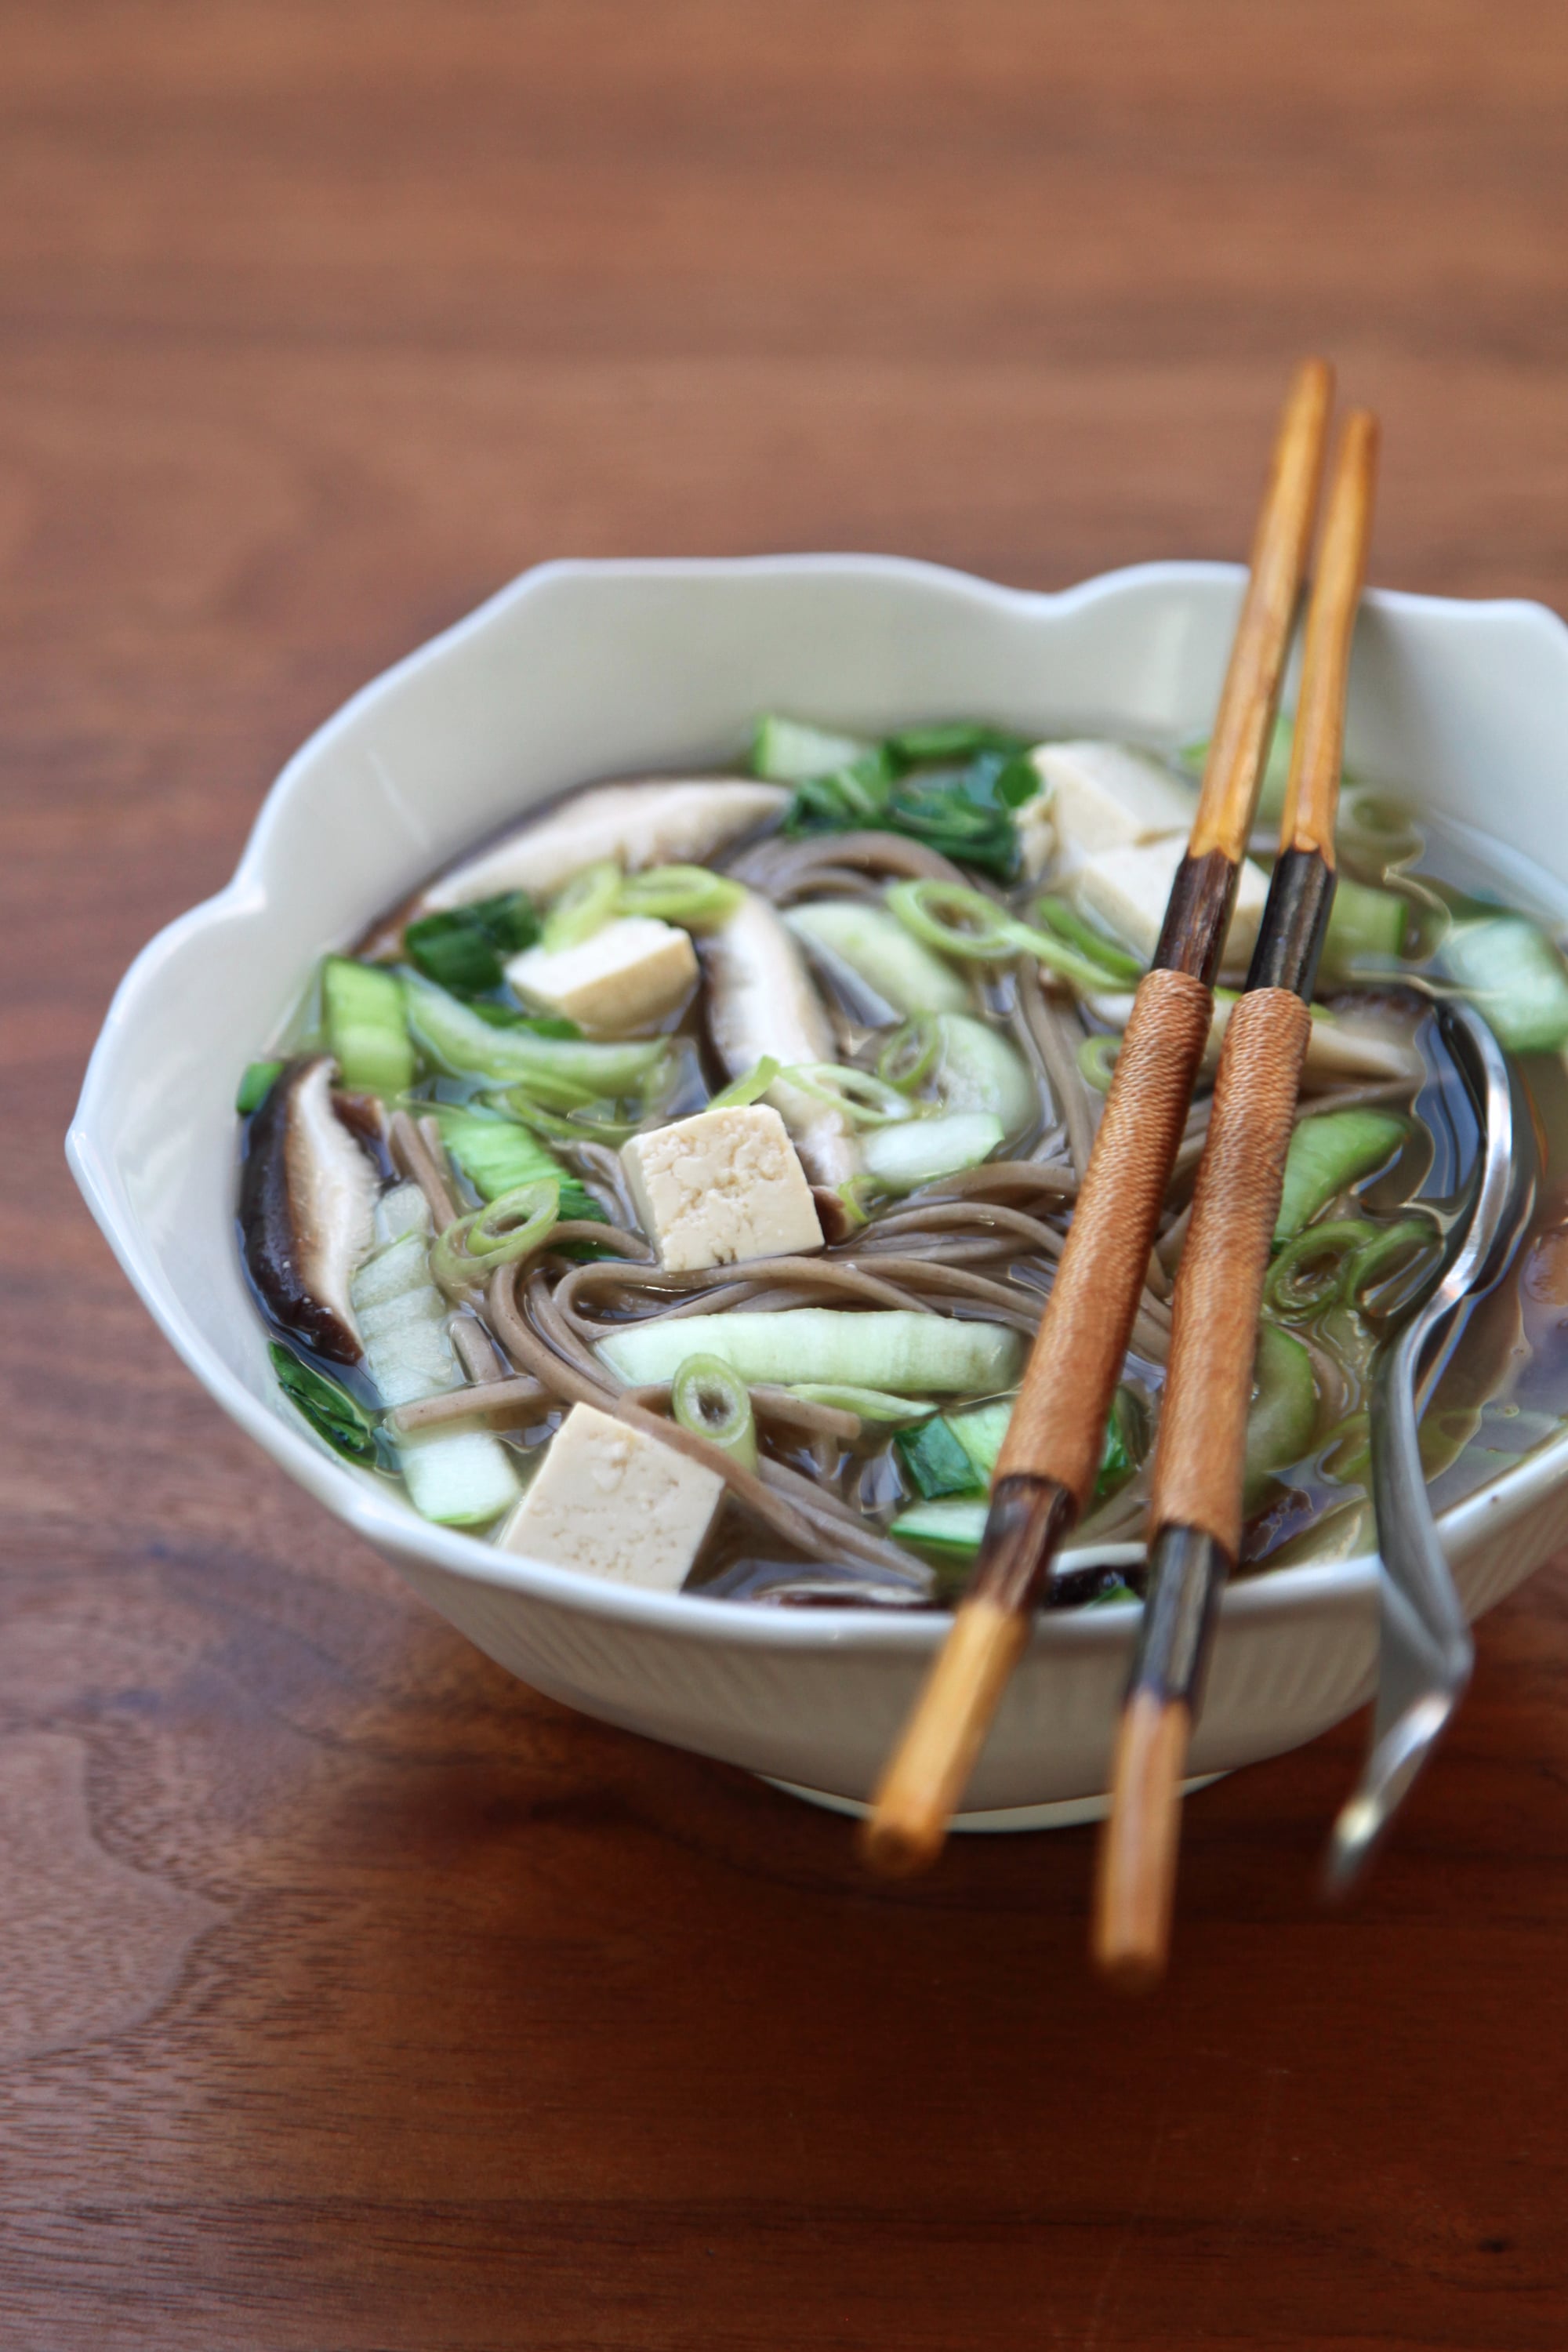 Vegan Miso Soup With Soba Noodles and Mushrooms | POPSUGAR Food